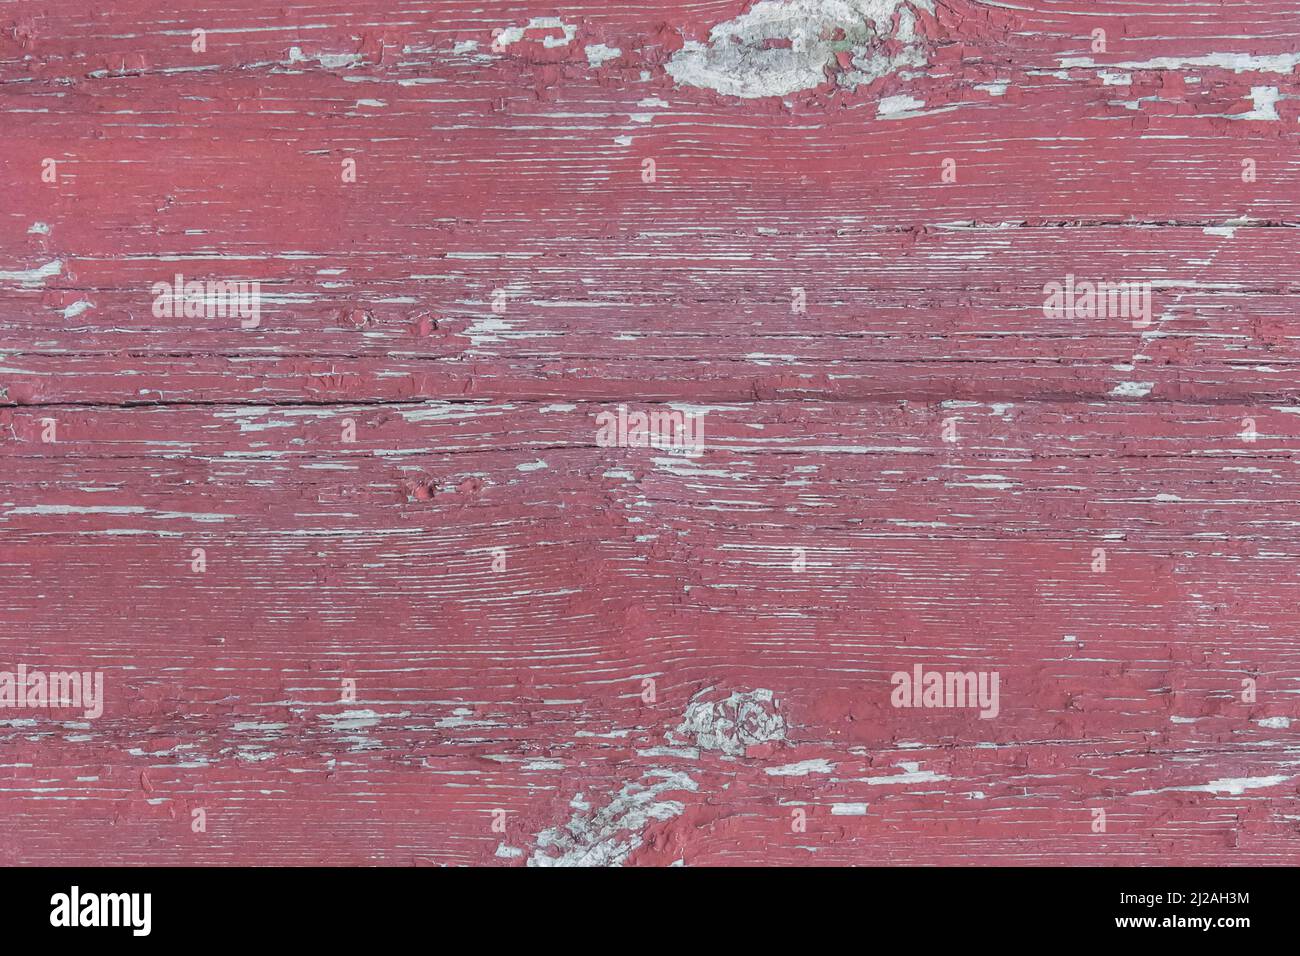 Alte hölzerne abgenutzte Zaunbretter verwitterte Textur in abblätternder roter Farbe schmutzig veralteter Hintergrund. Stockfoto